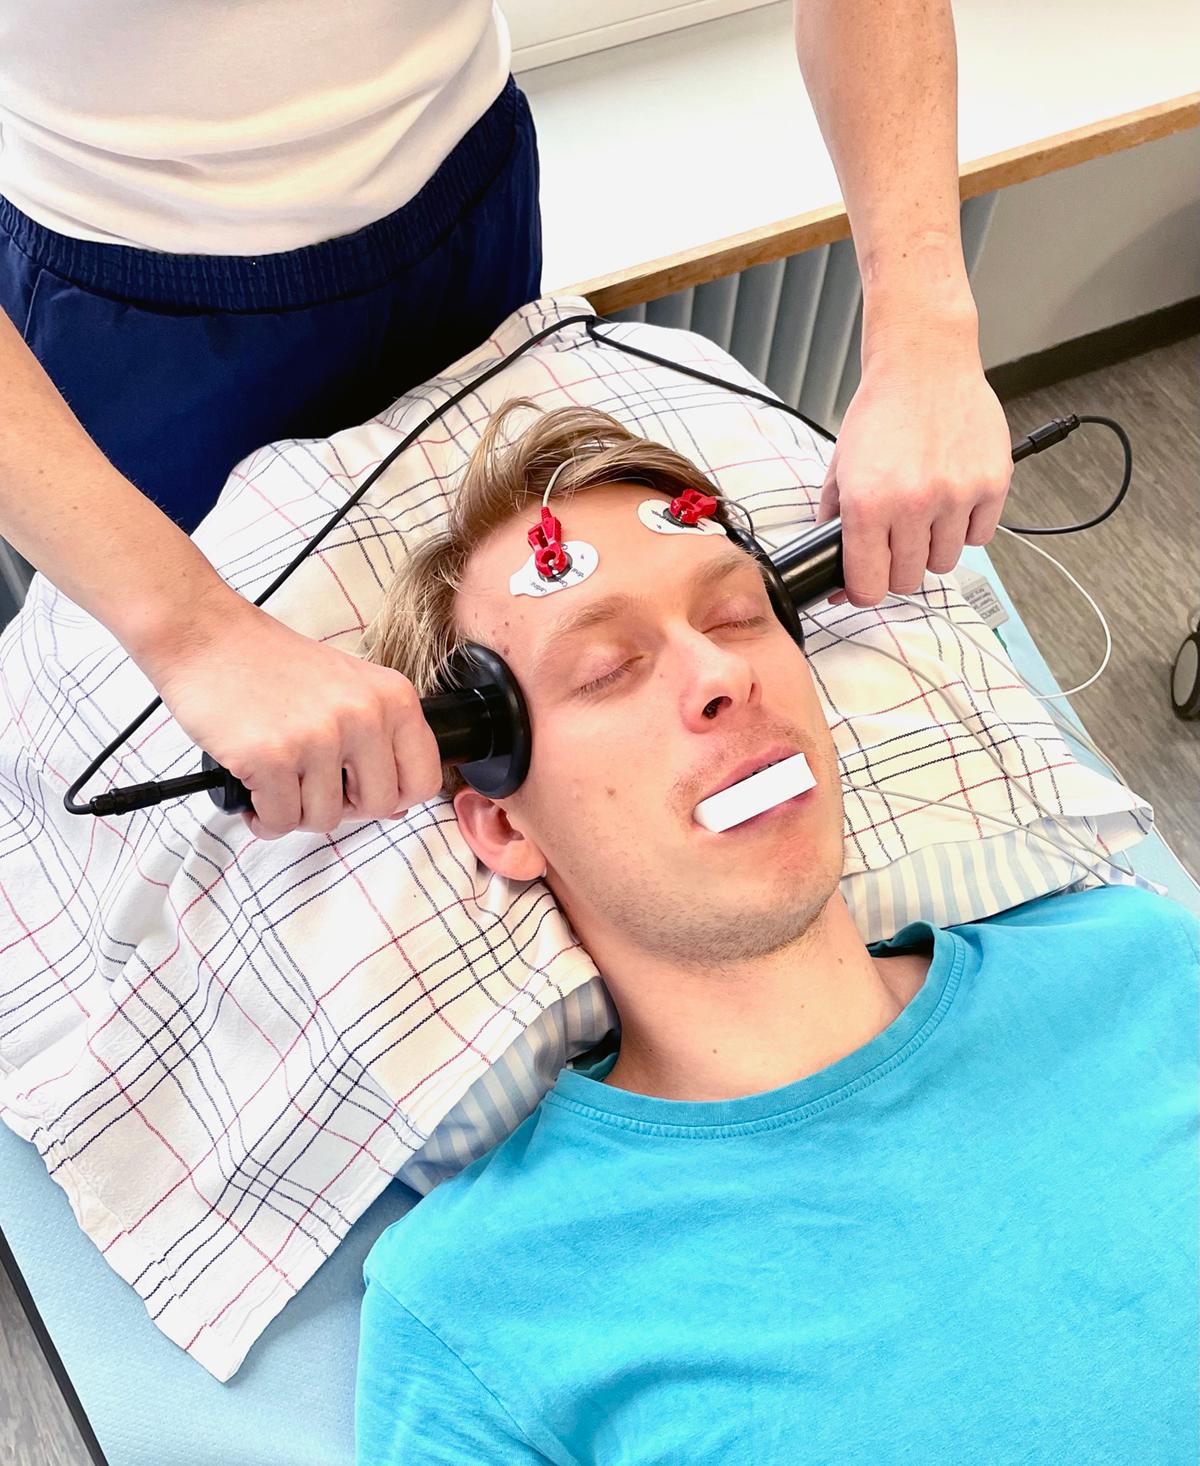 Ved ECT induceres et kortvarigt og kontrolleret generaliseret krampeanfald via elektrostimulation med elektroder, som er ­anbragt på hovedbunden. På billedet anvendes håndholdte stimulationselektroder. Under anfaldet monitoreres hjerne­aktiviteten med eeg-elektroder bl.a. i panden. Tand­beskytter anvendes for at undgå tandskader. Personen på billedet er en figurant.